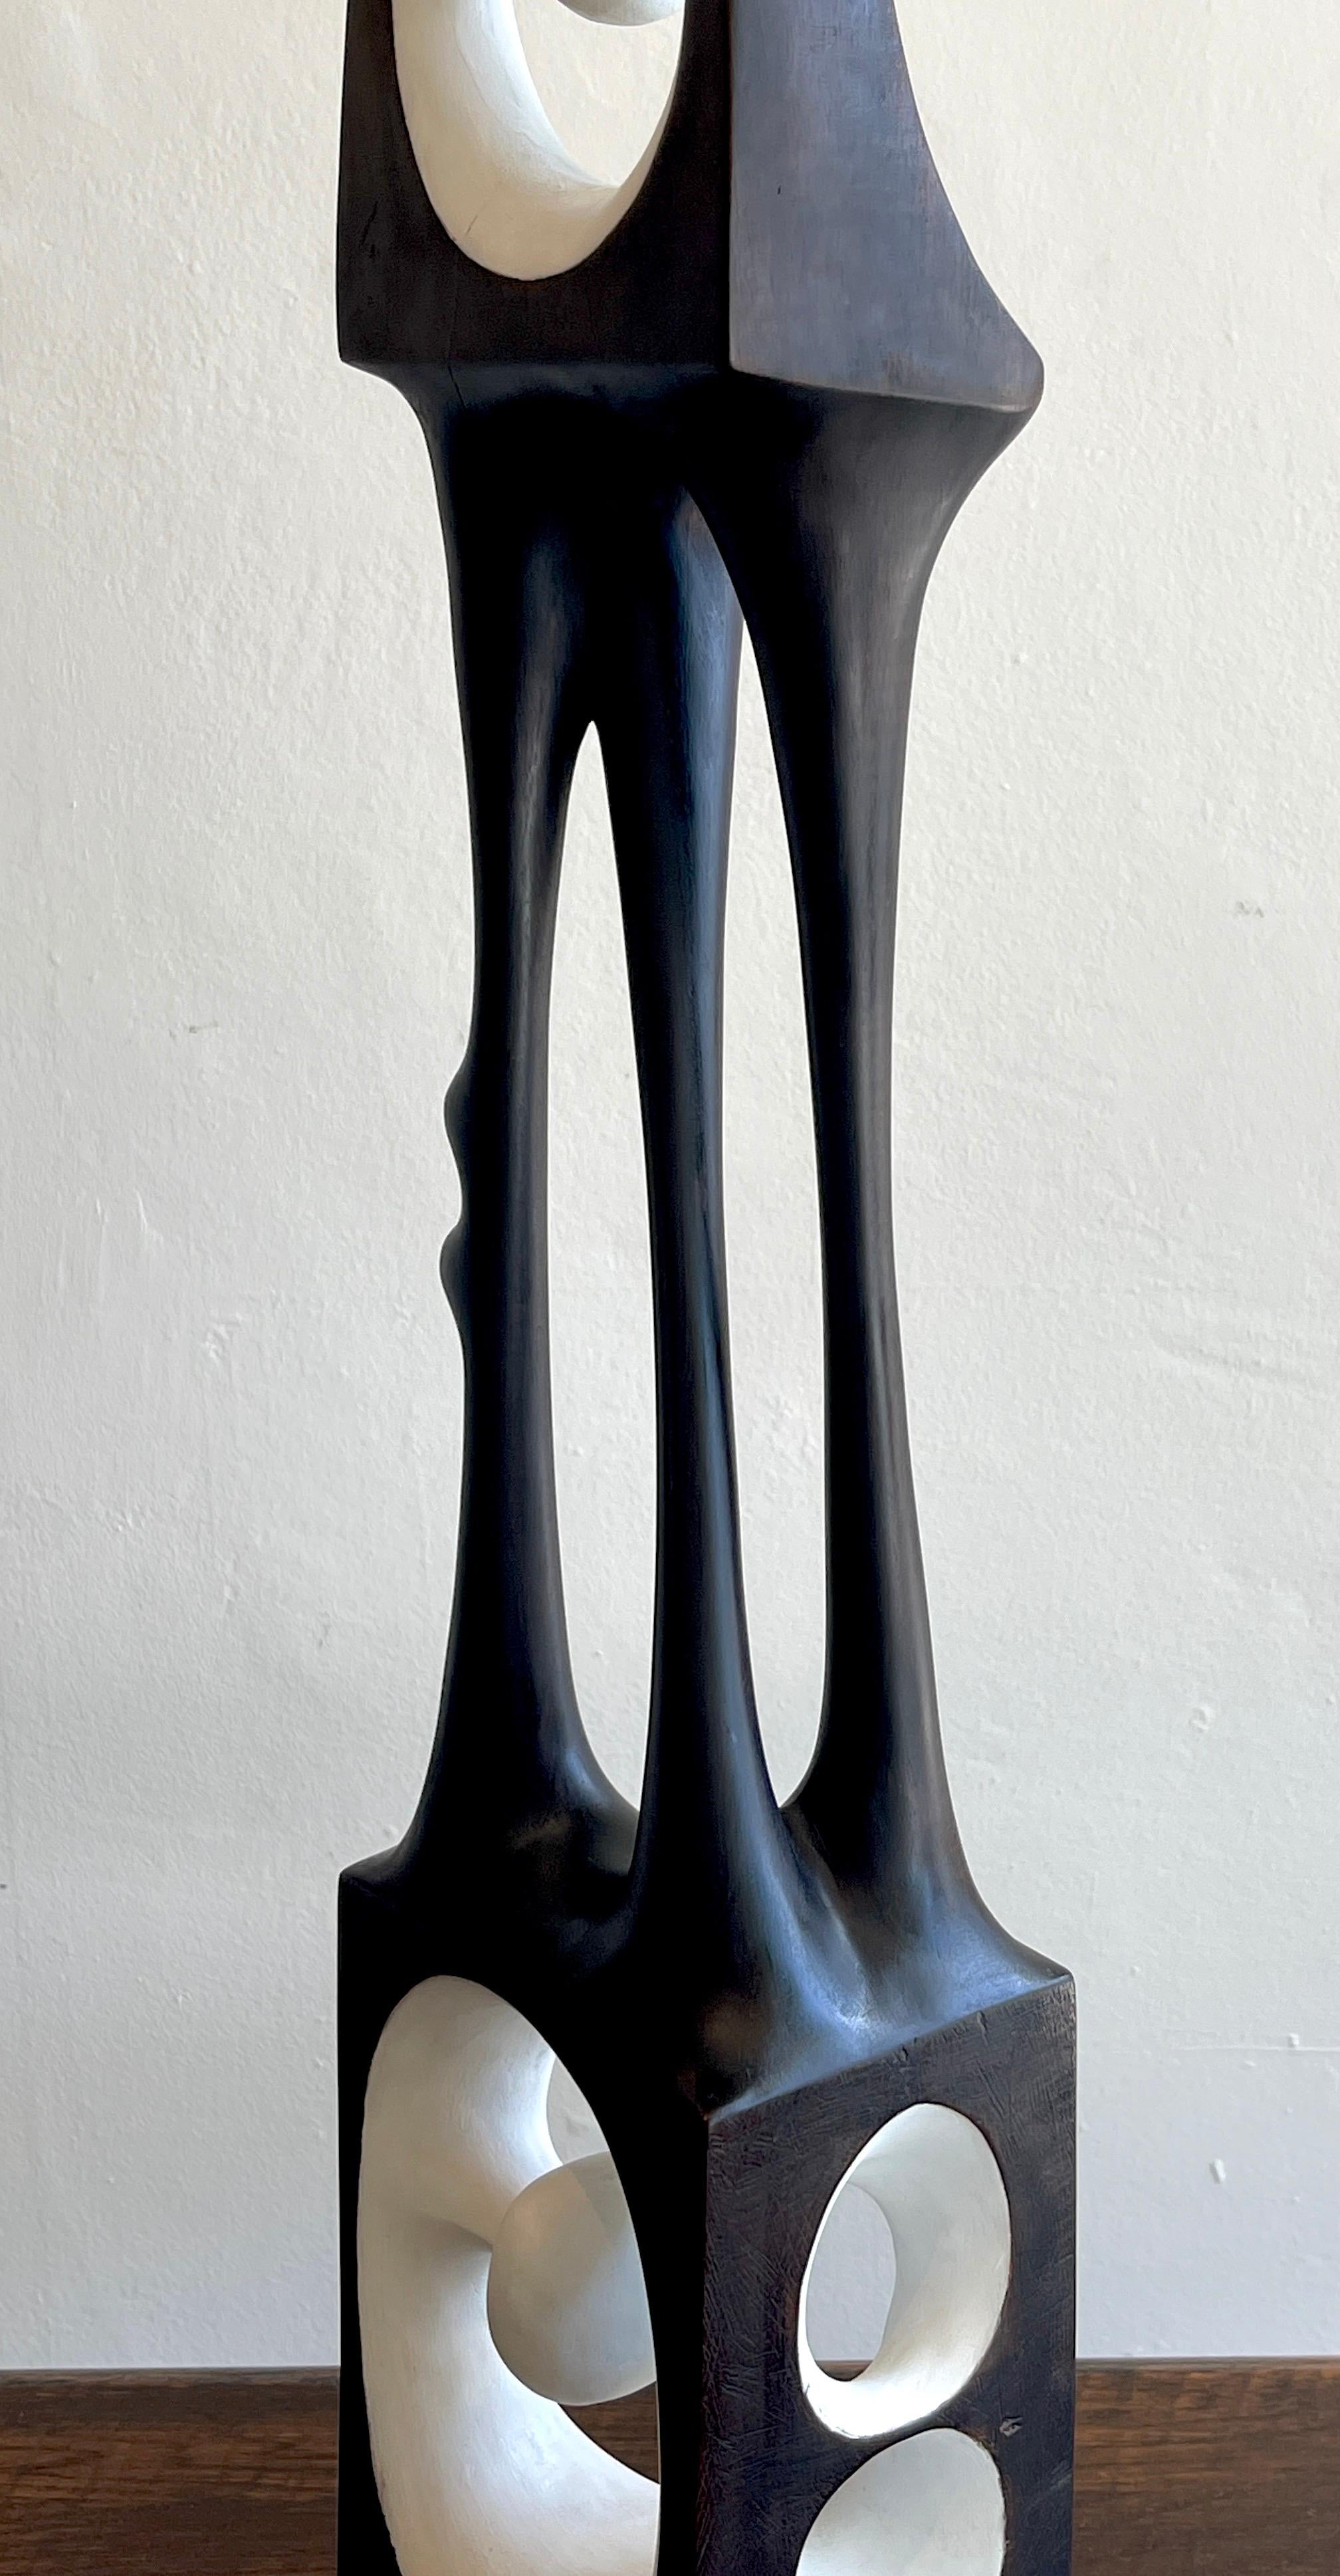 Agustín Cárdenas Abstract Polychromed Wood Sculpture 3